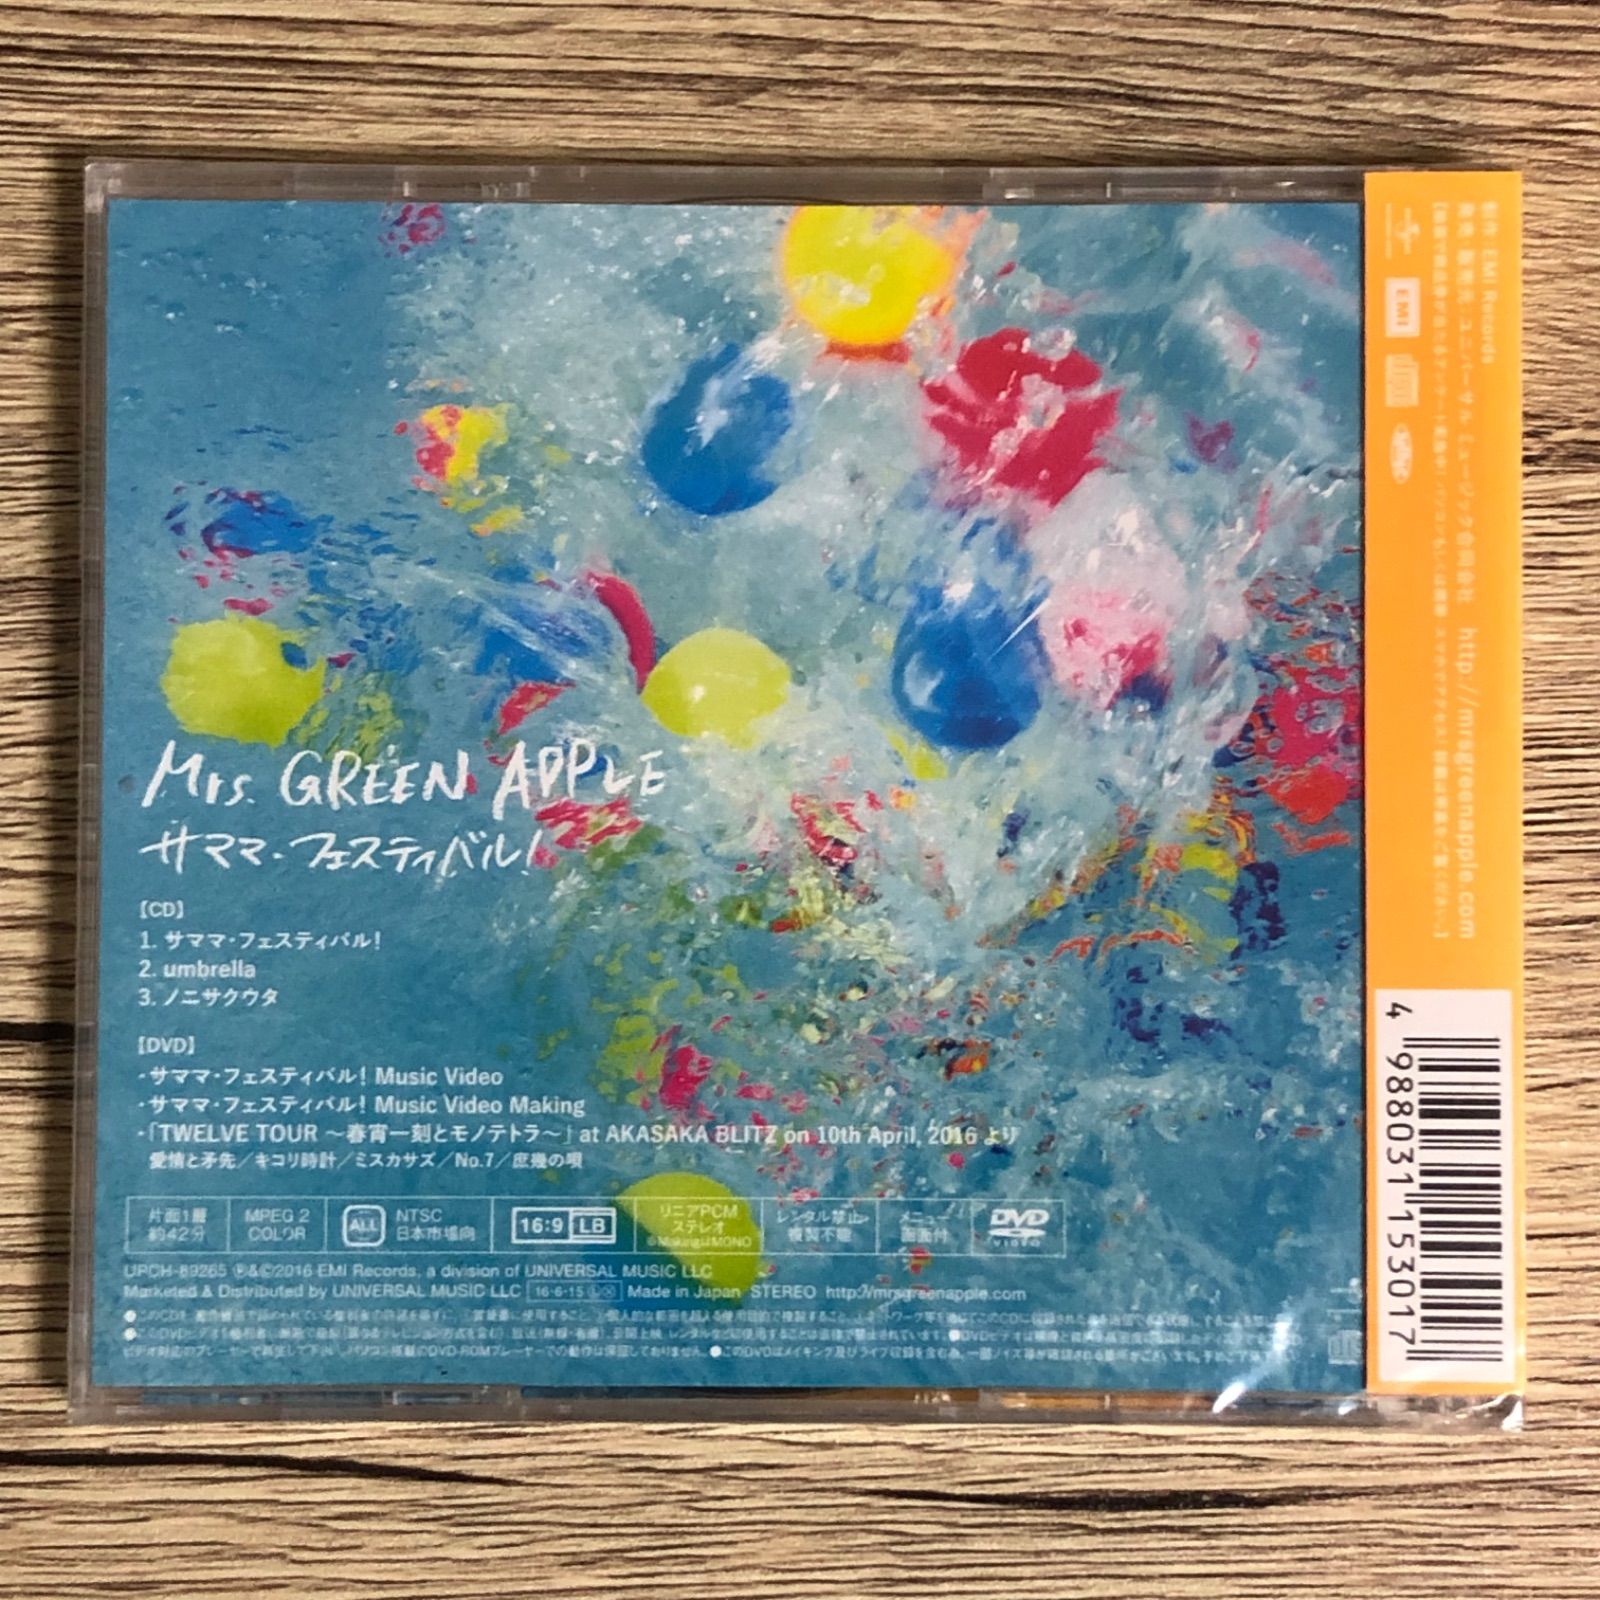 お得品質保証サママ・フェスティバル! 初回CD+DVD Mrs.GREEN APPLEミセス 邦楽